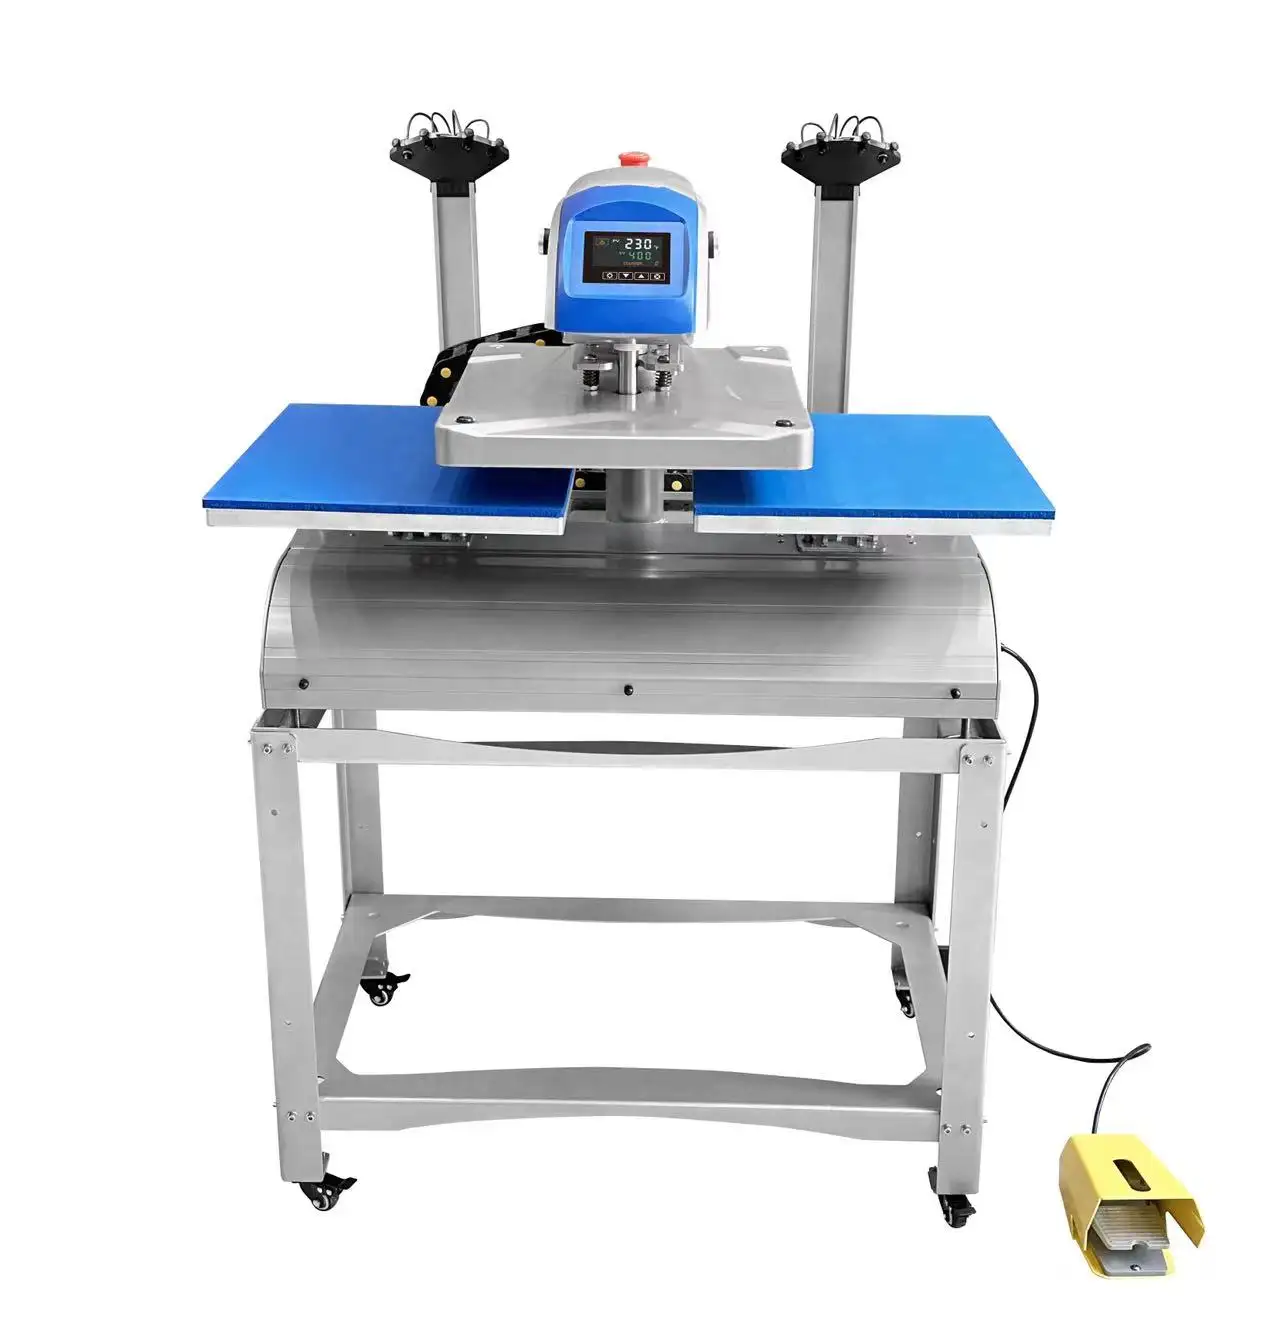 Automatische 16x20 Doppelstations-T-Shirt-Druck-Sublimations-Heiß press maschine mit Laser ausrichtung